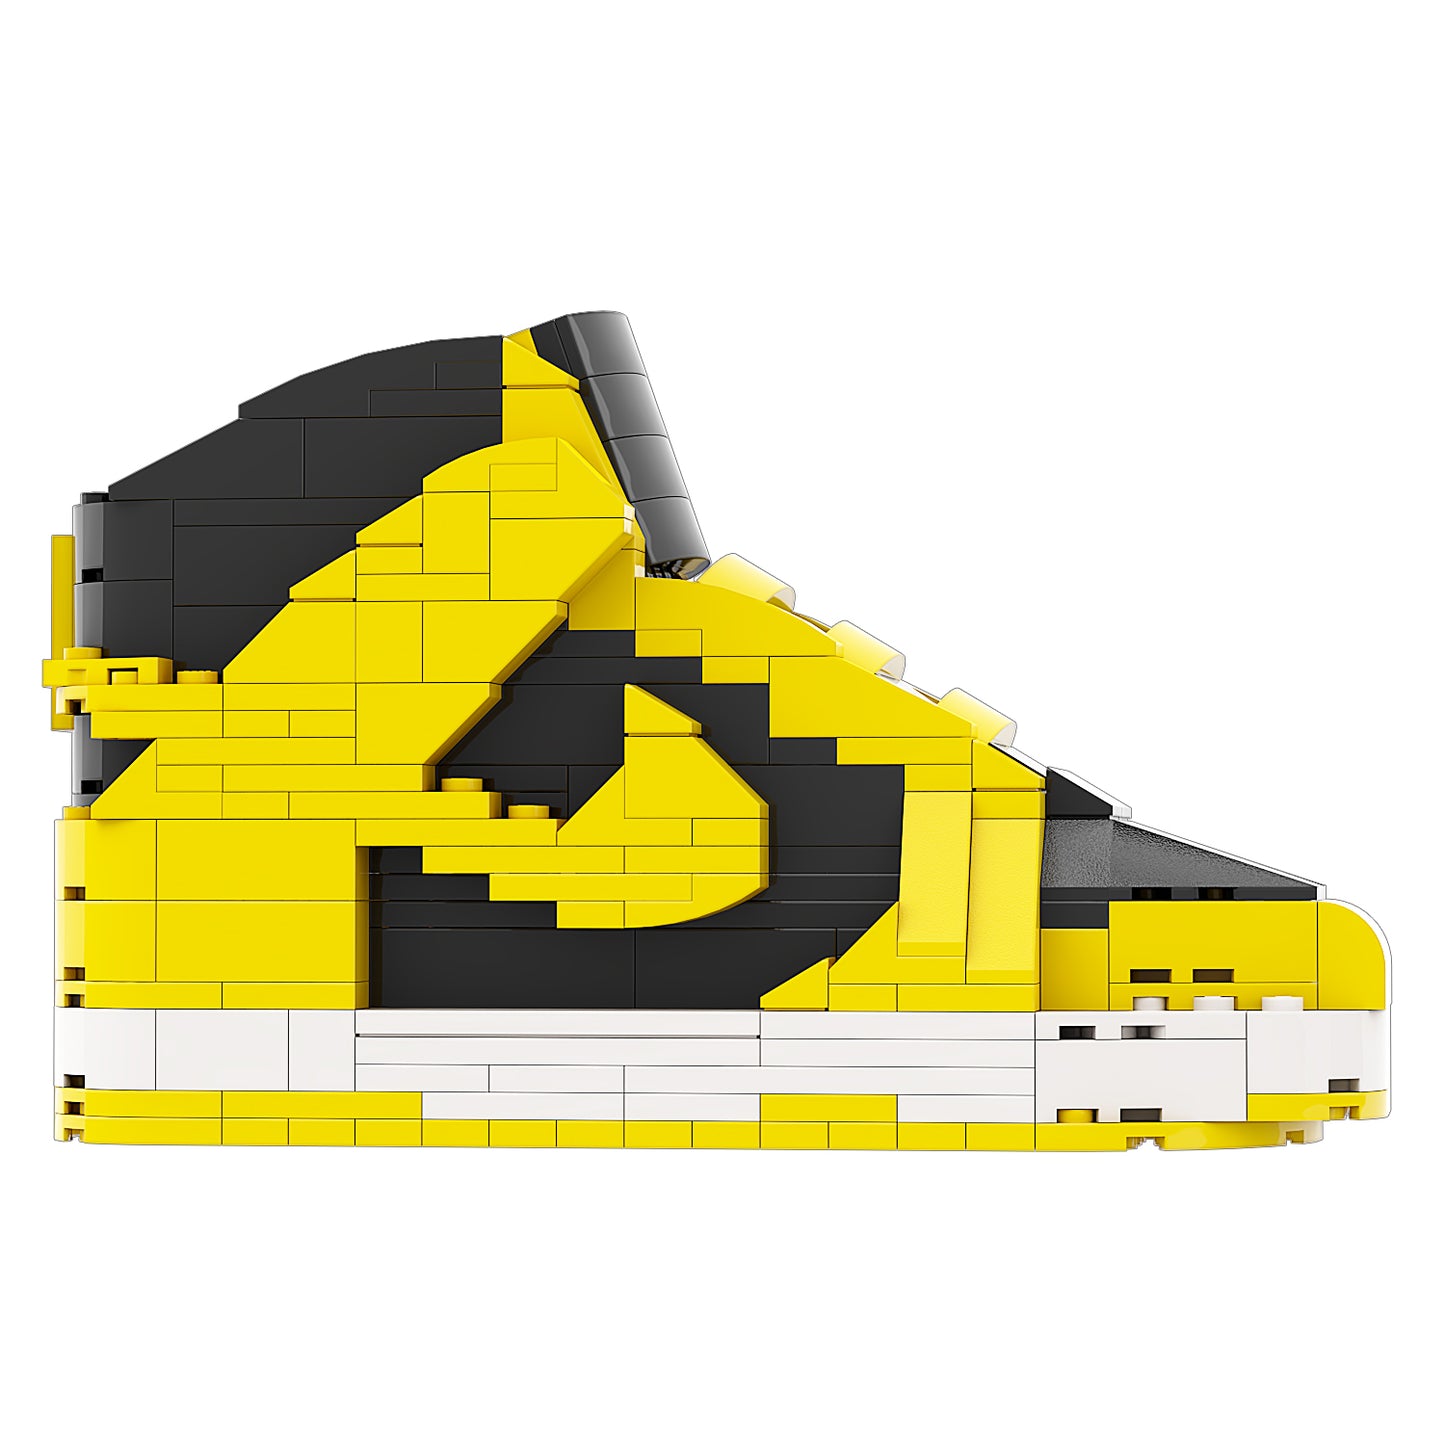 REGULAR  "Dunk High Wutang" Sneaker Bricks with Mini Figure